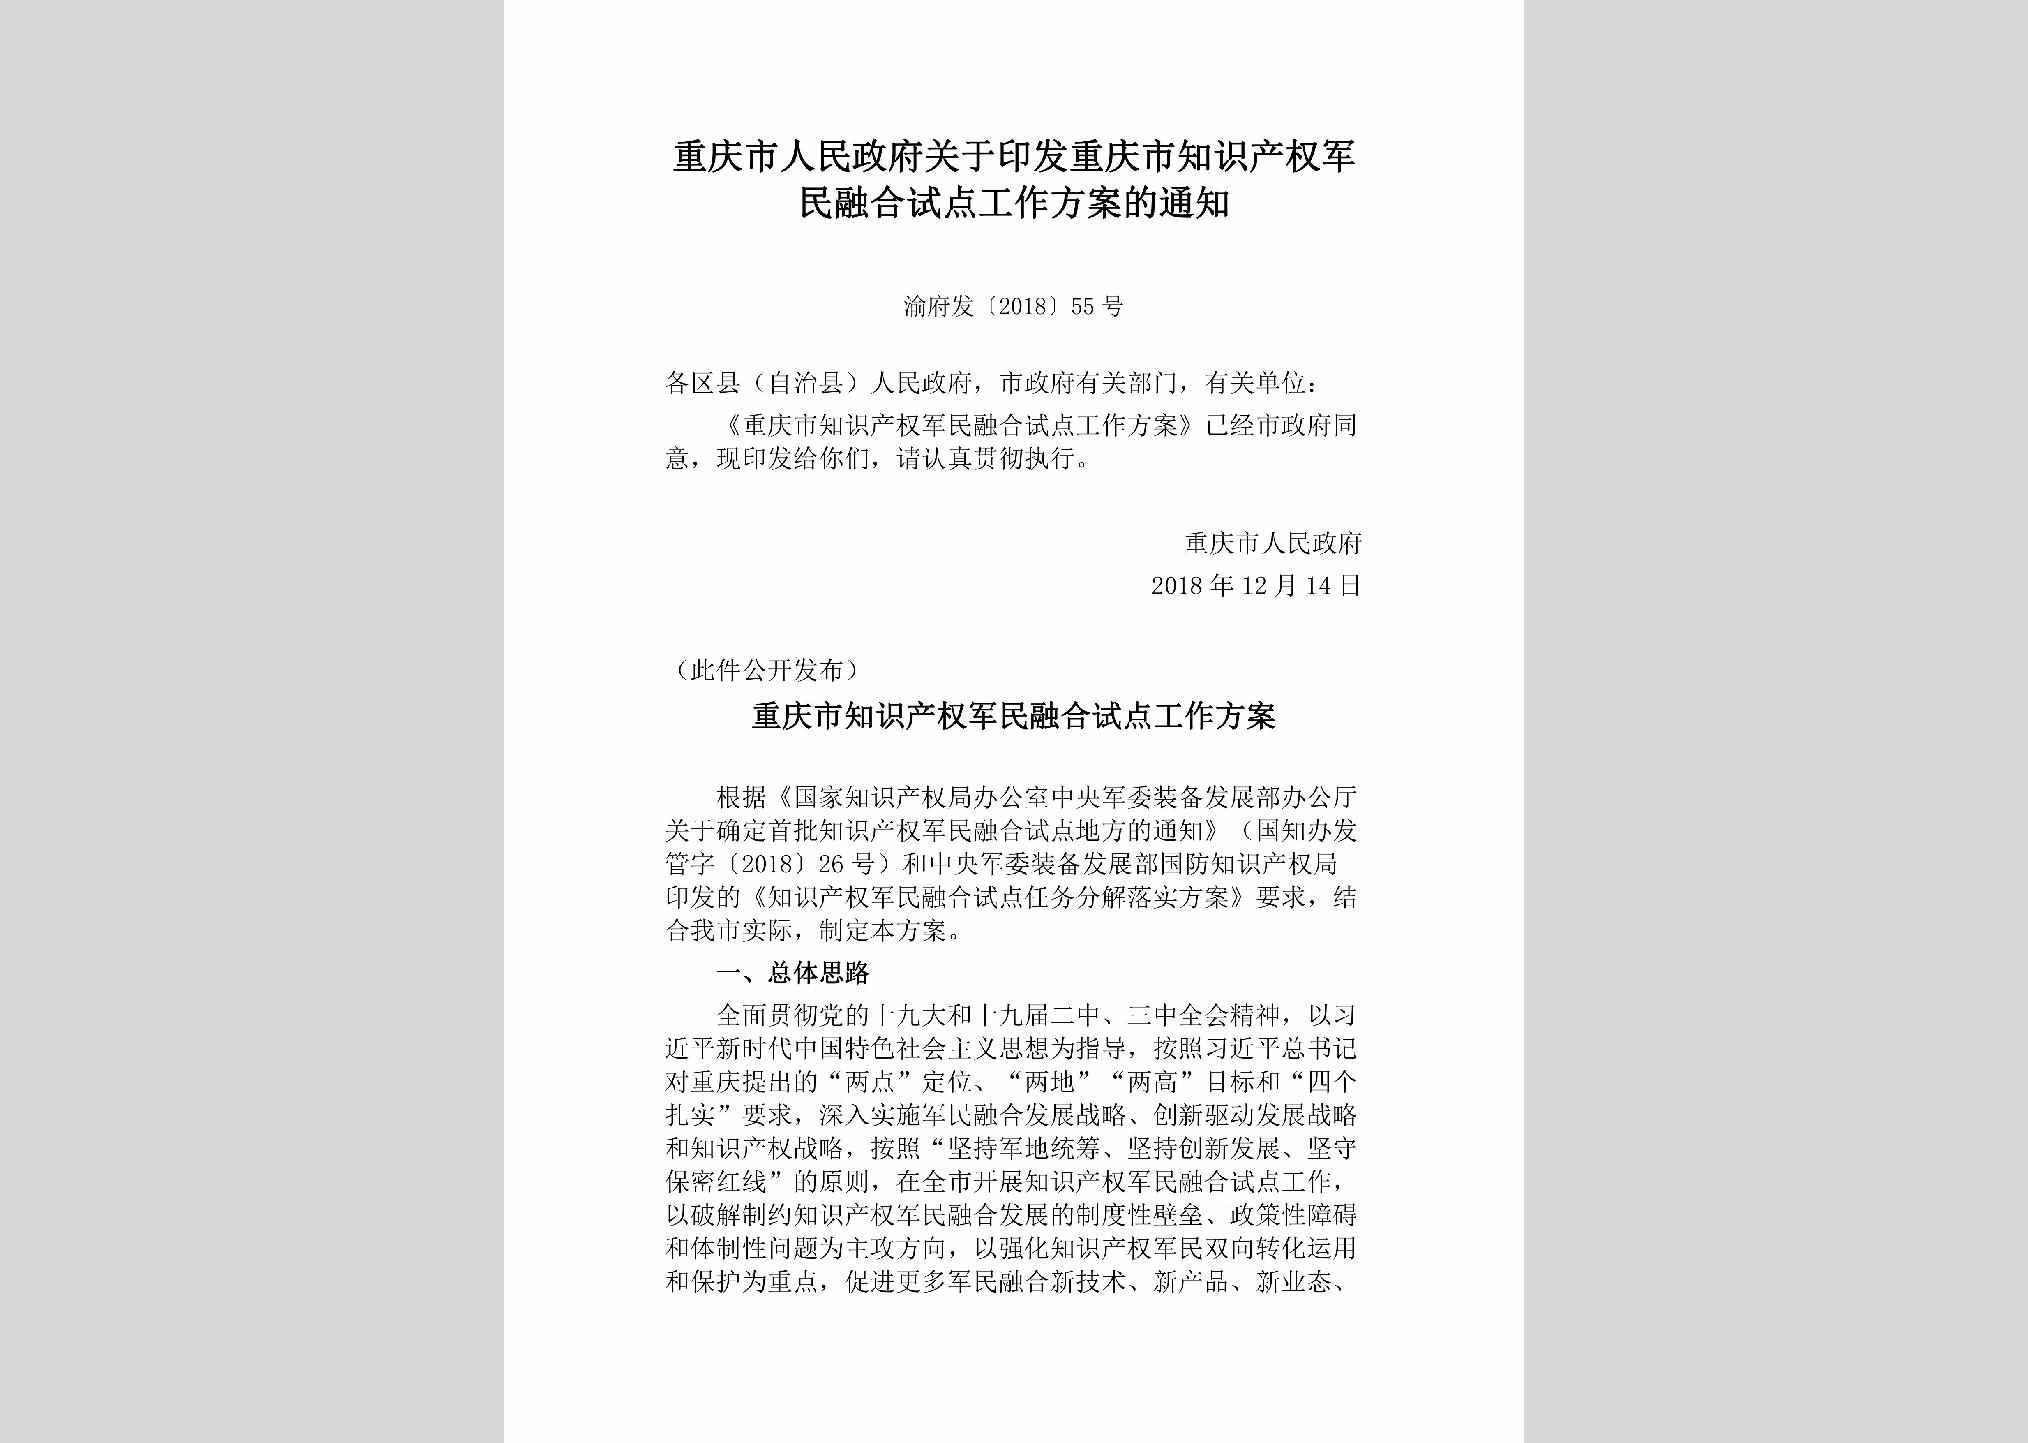 渝府发[2018]55号：重庆市人民政府关于印发重庆市知识产权军民融合试点工作方案的通知